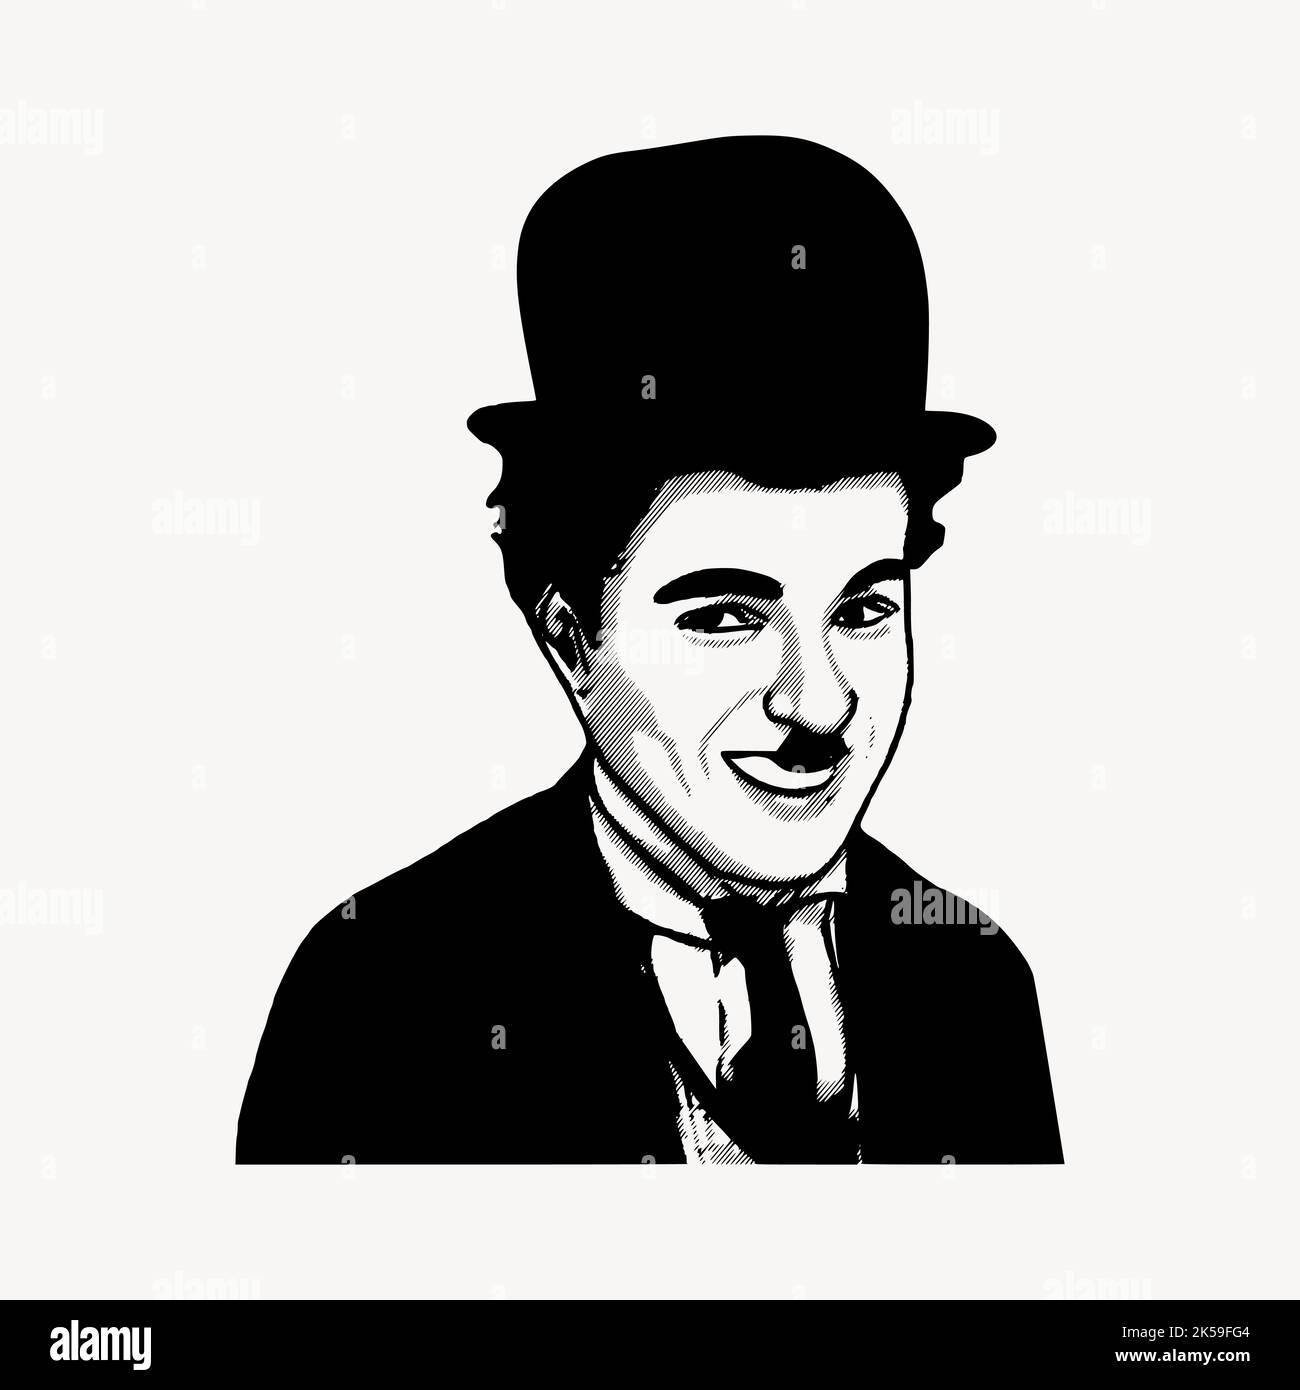 Disegno di Charlie Chaplin, vettore di ritratto della persona famosa. Illustrazione Vettoriale